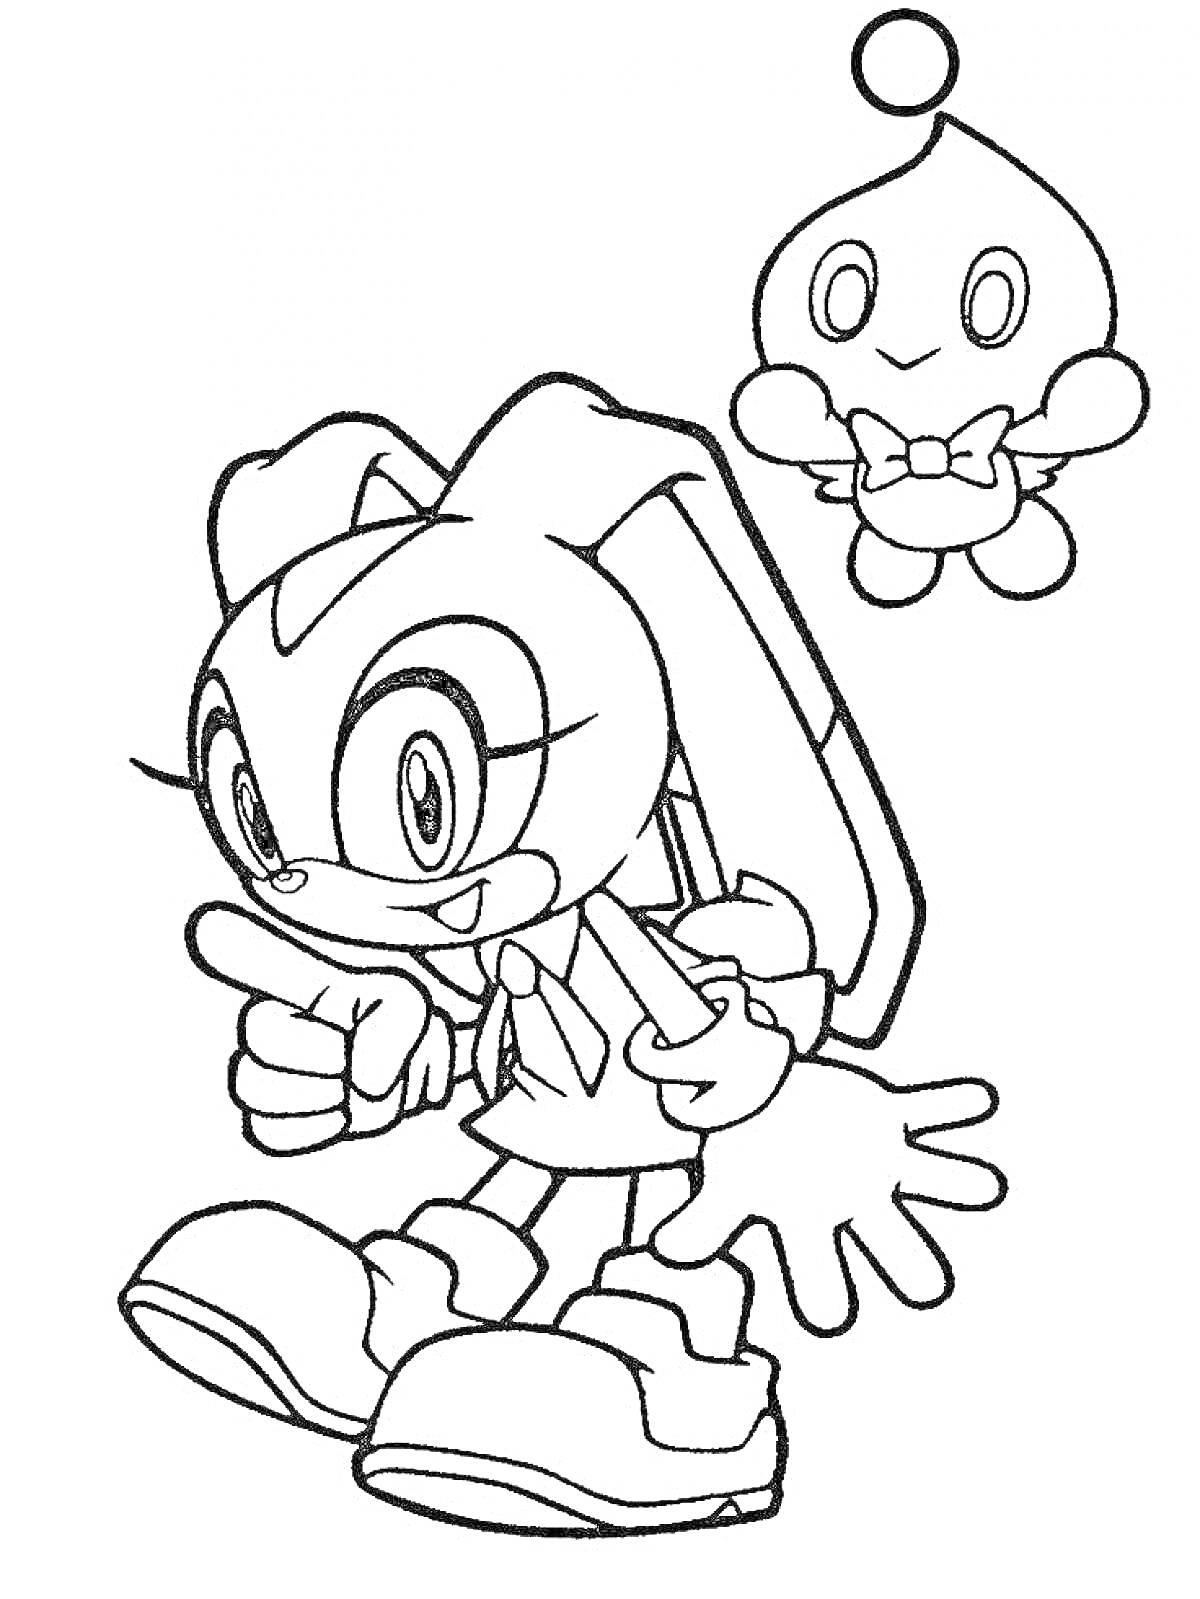 Раскраска Кролик и летающий персонаж с бантиком из серии Соник